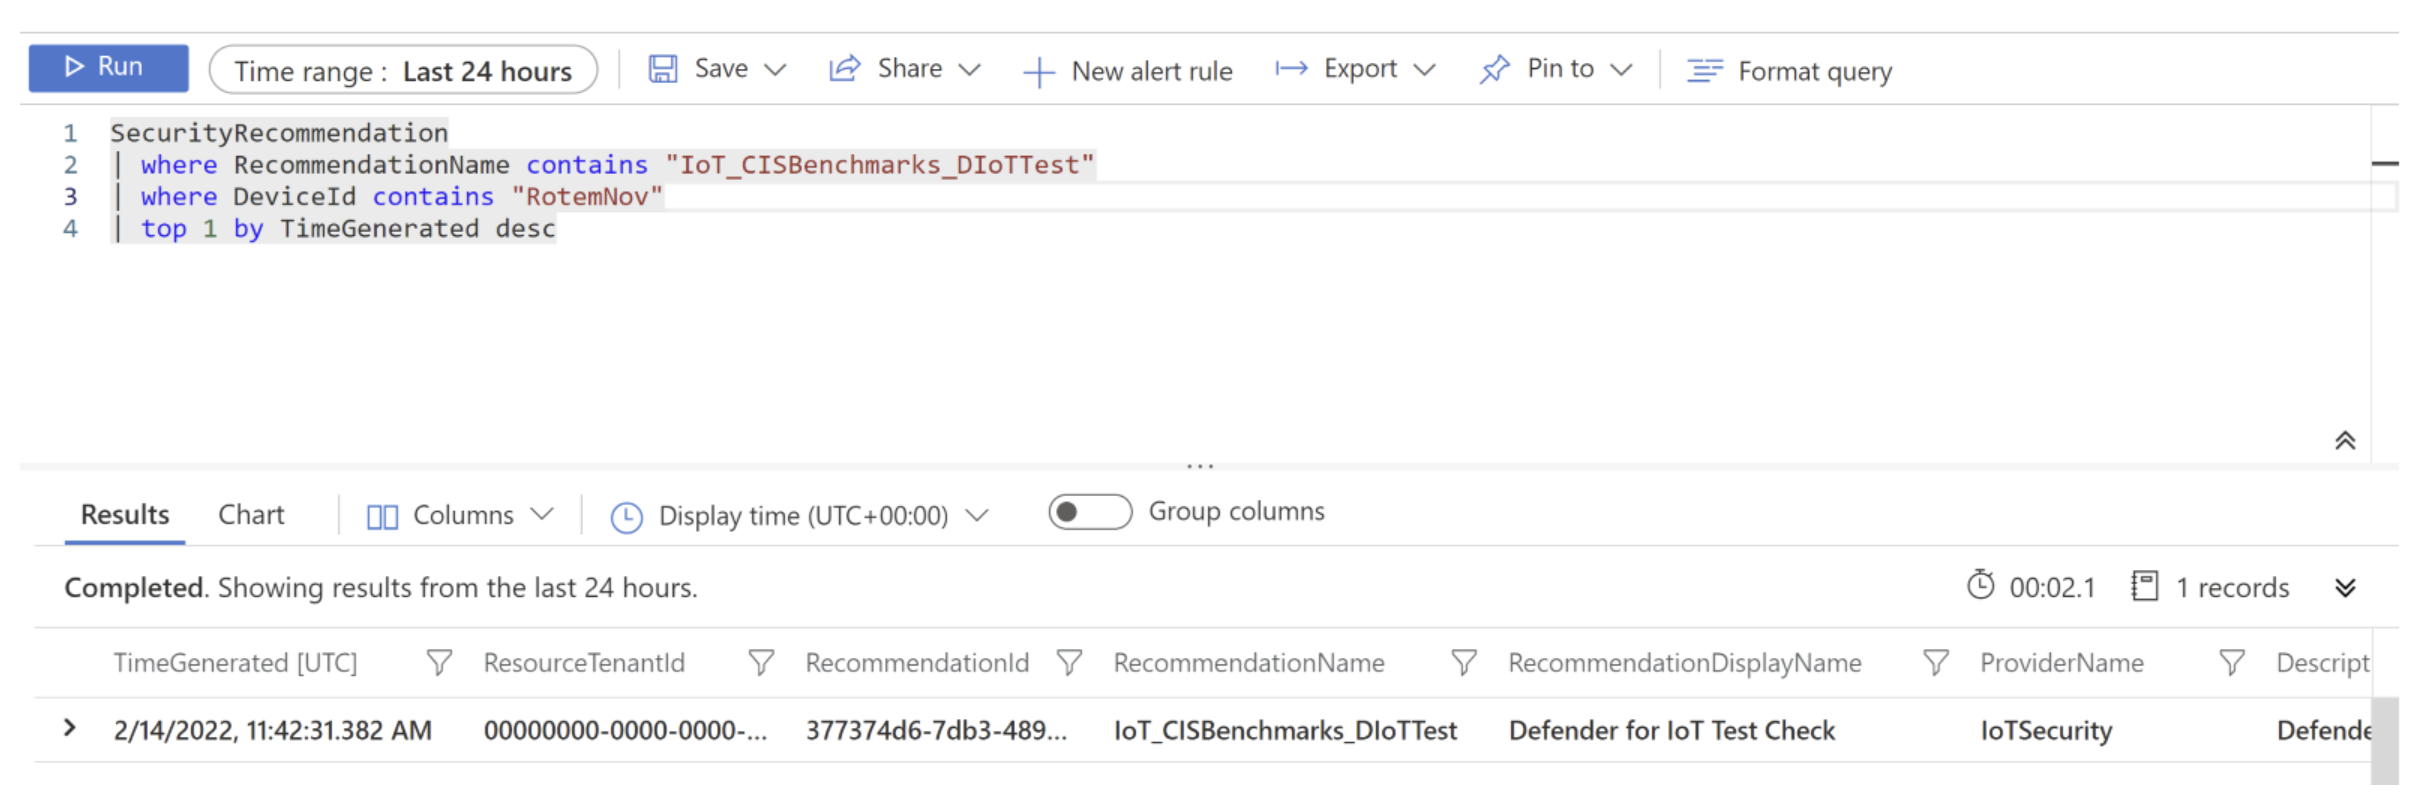 Снимок экрана: запрос IoT_CISBenchmarks_DIoTTest, выполненный в Log Analytics.